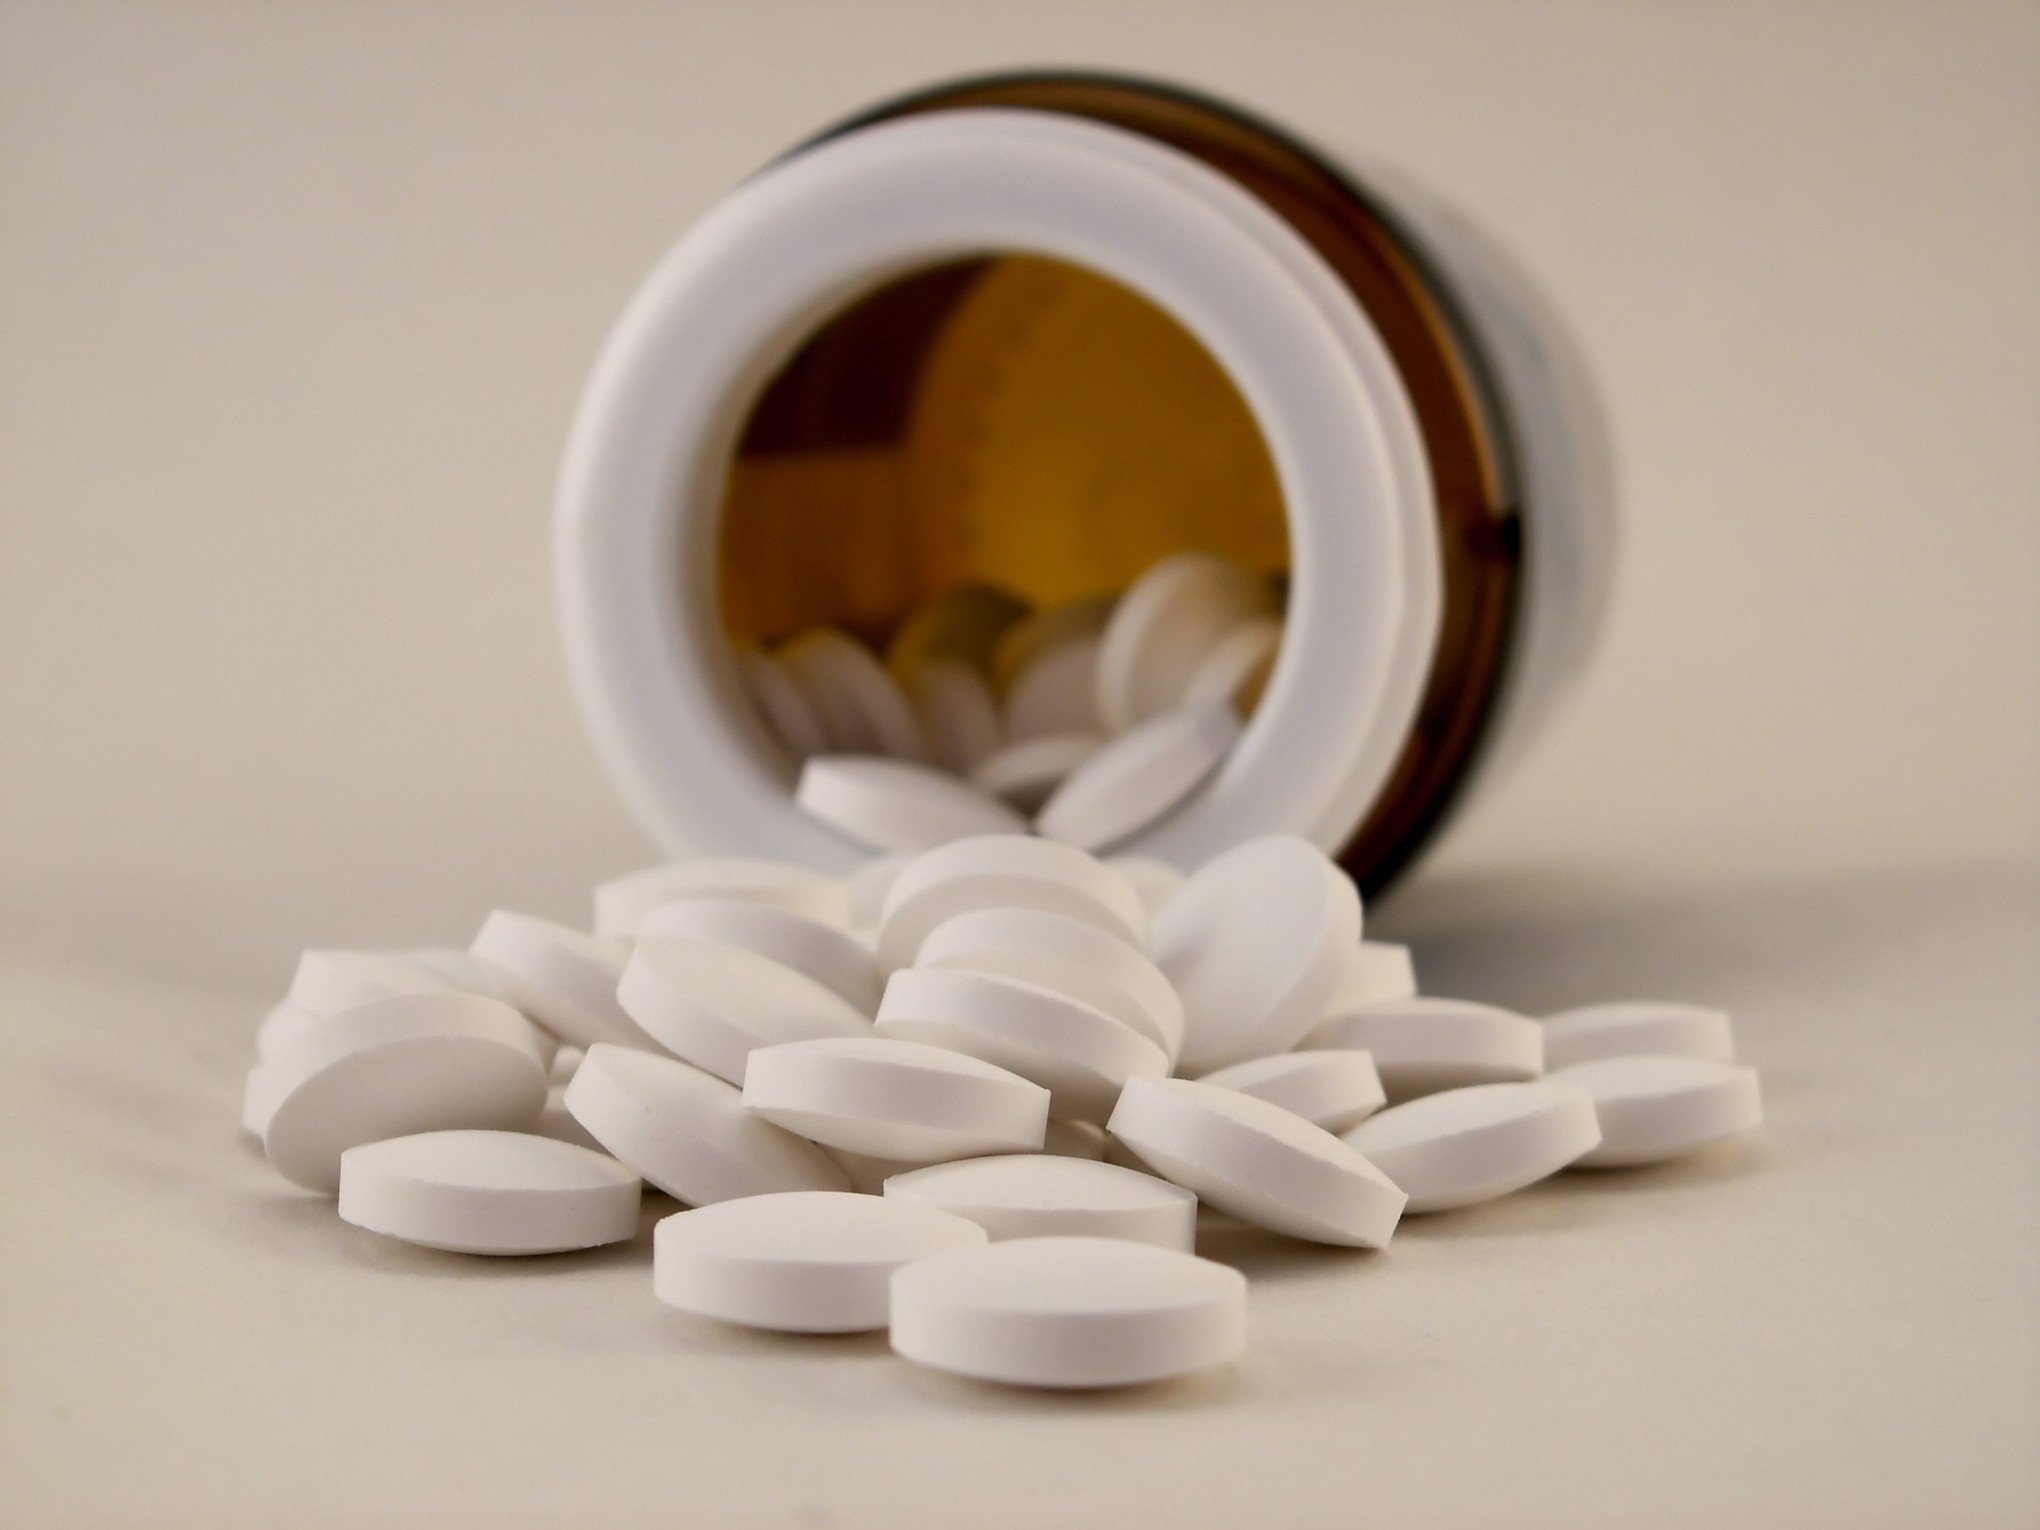 FENTANIL: O que é a droga que transforma usuários em "zumbis" e mata milhares por overdose